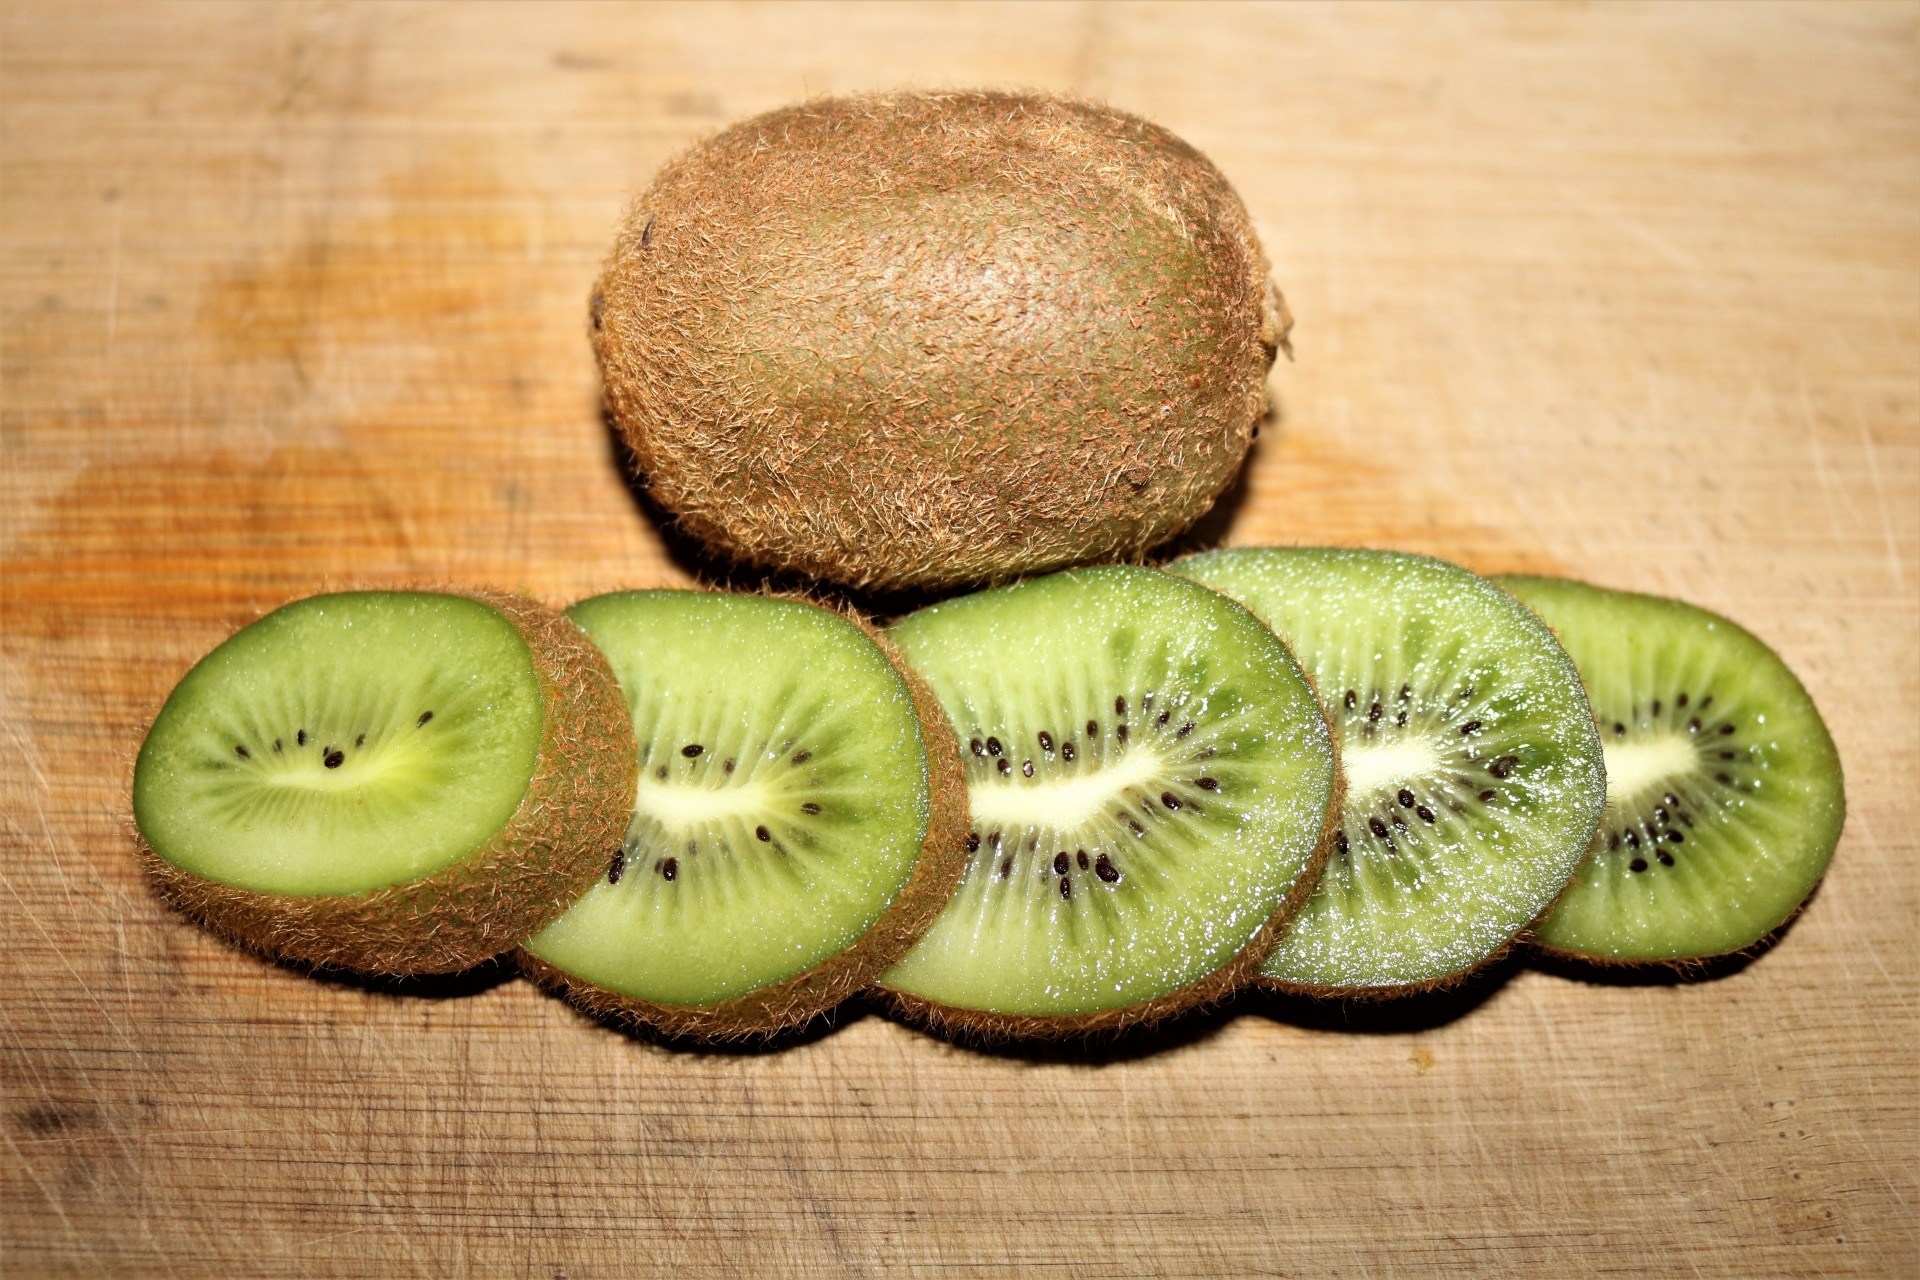 kiwifruit benefits for pets